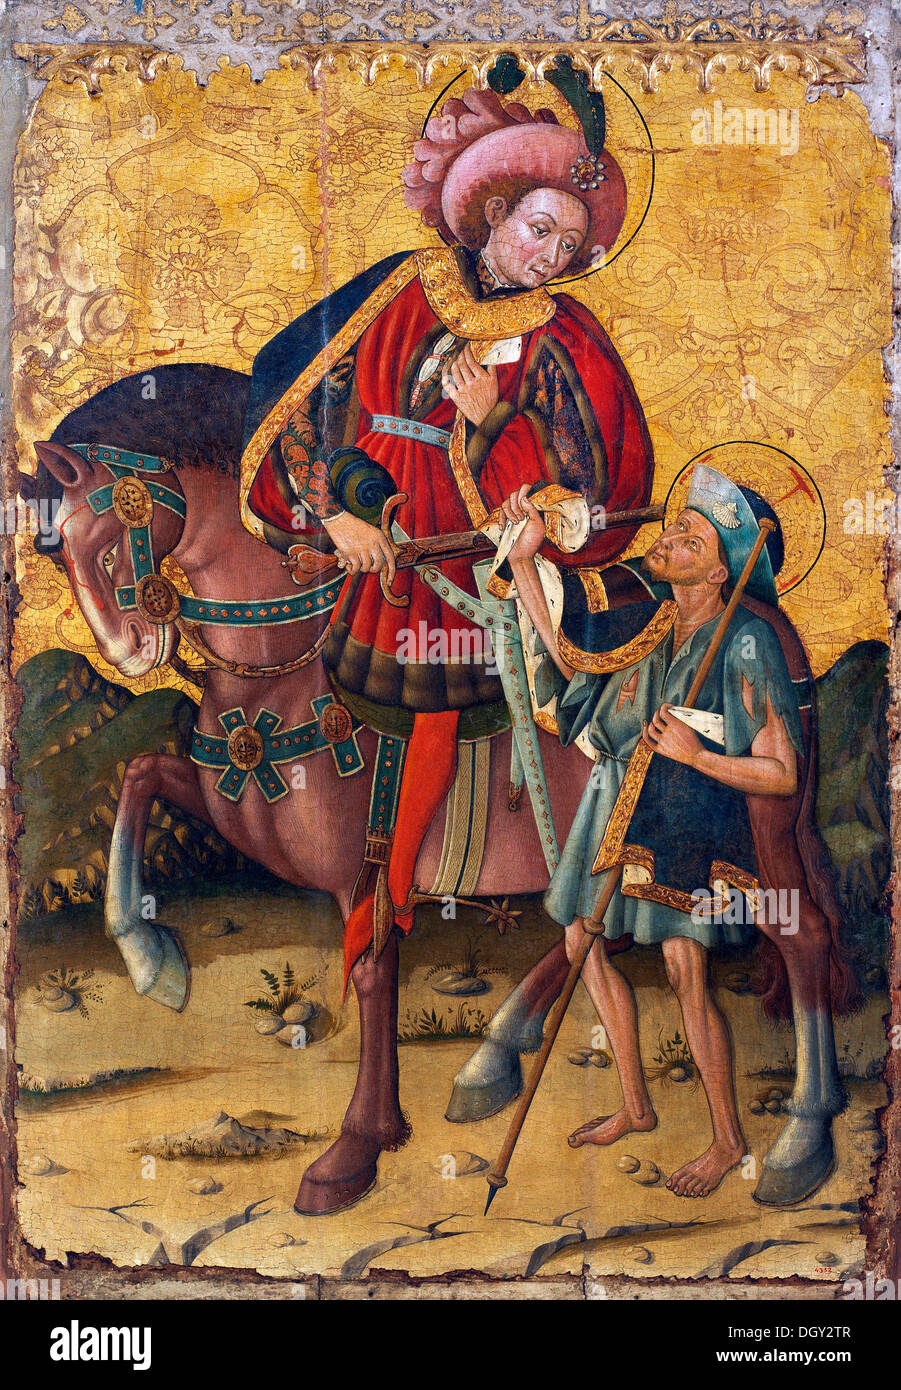 Blasco de Granen, San Martín compartiendo su manto. A mediados del siglo xv. Témpera sobre madera y pan de oro. Foto de stock